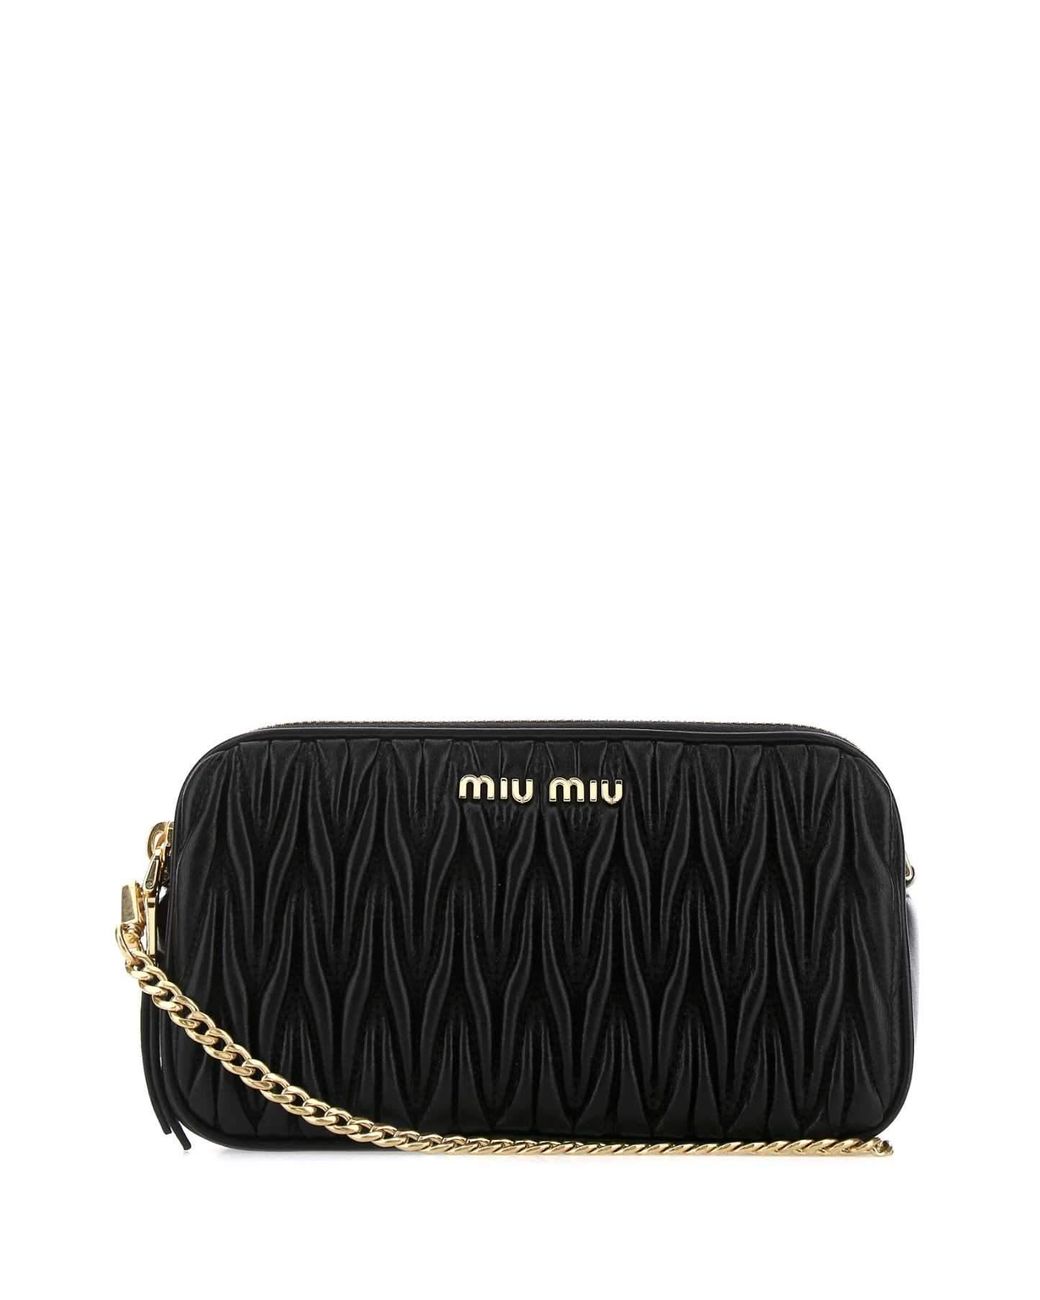 Miu Miu Leather Matelassè Shoulder Bag in Black - Lyst